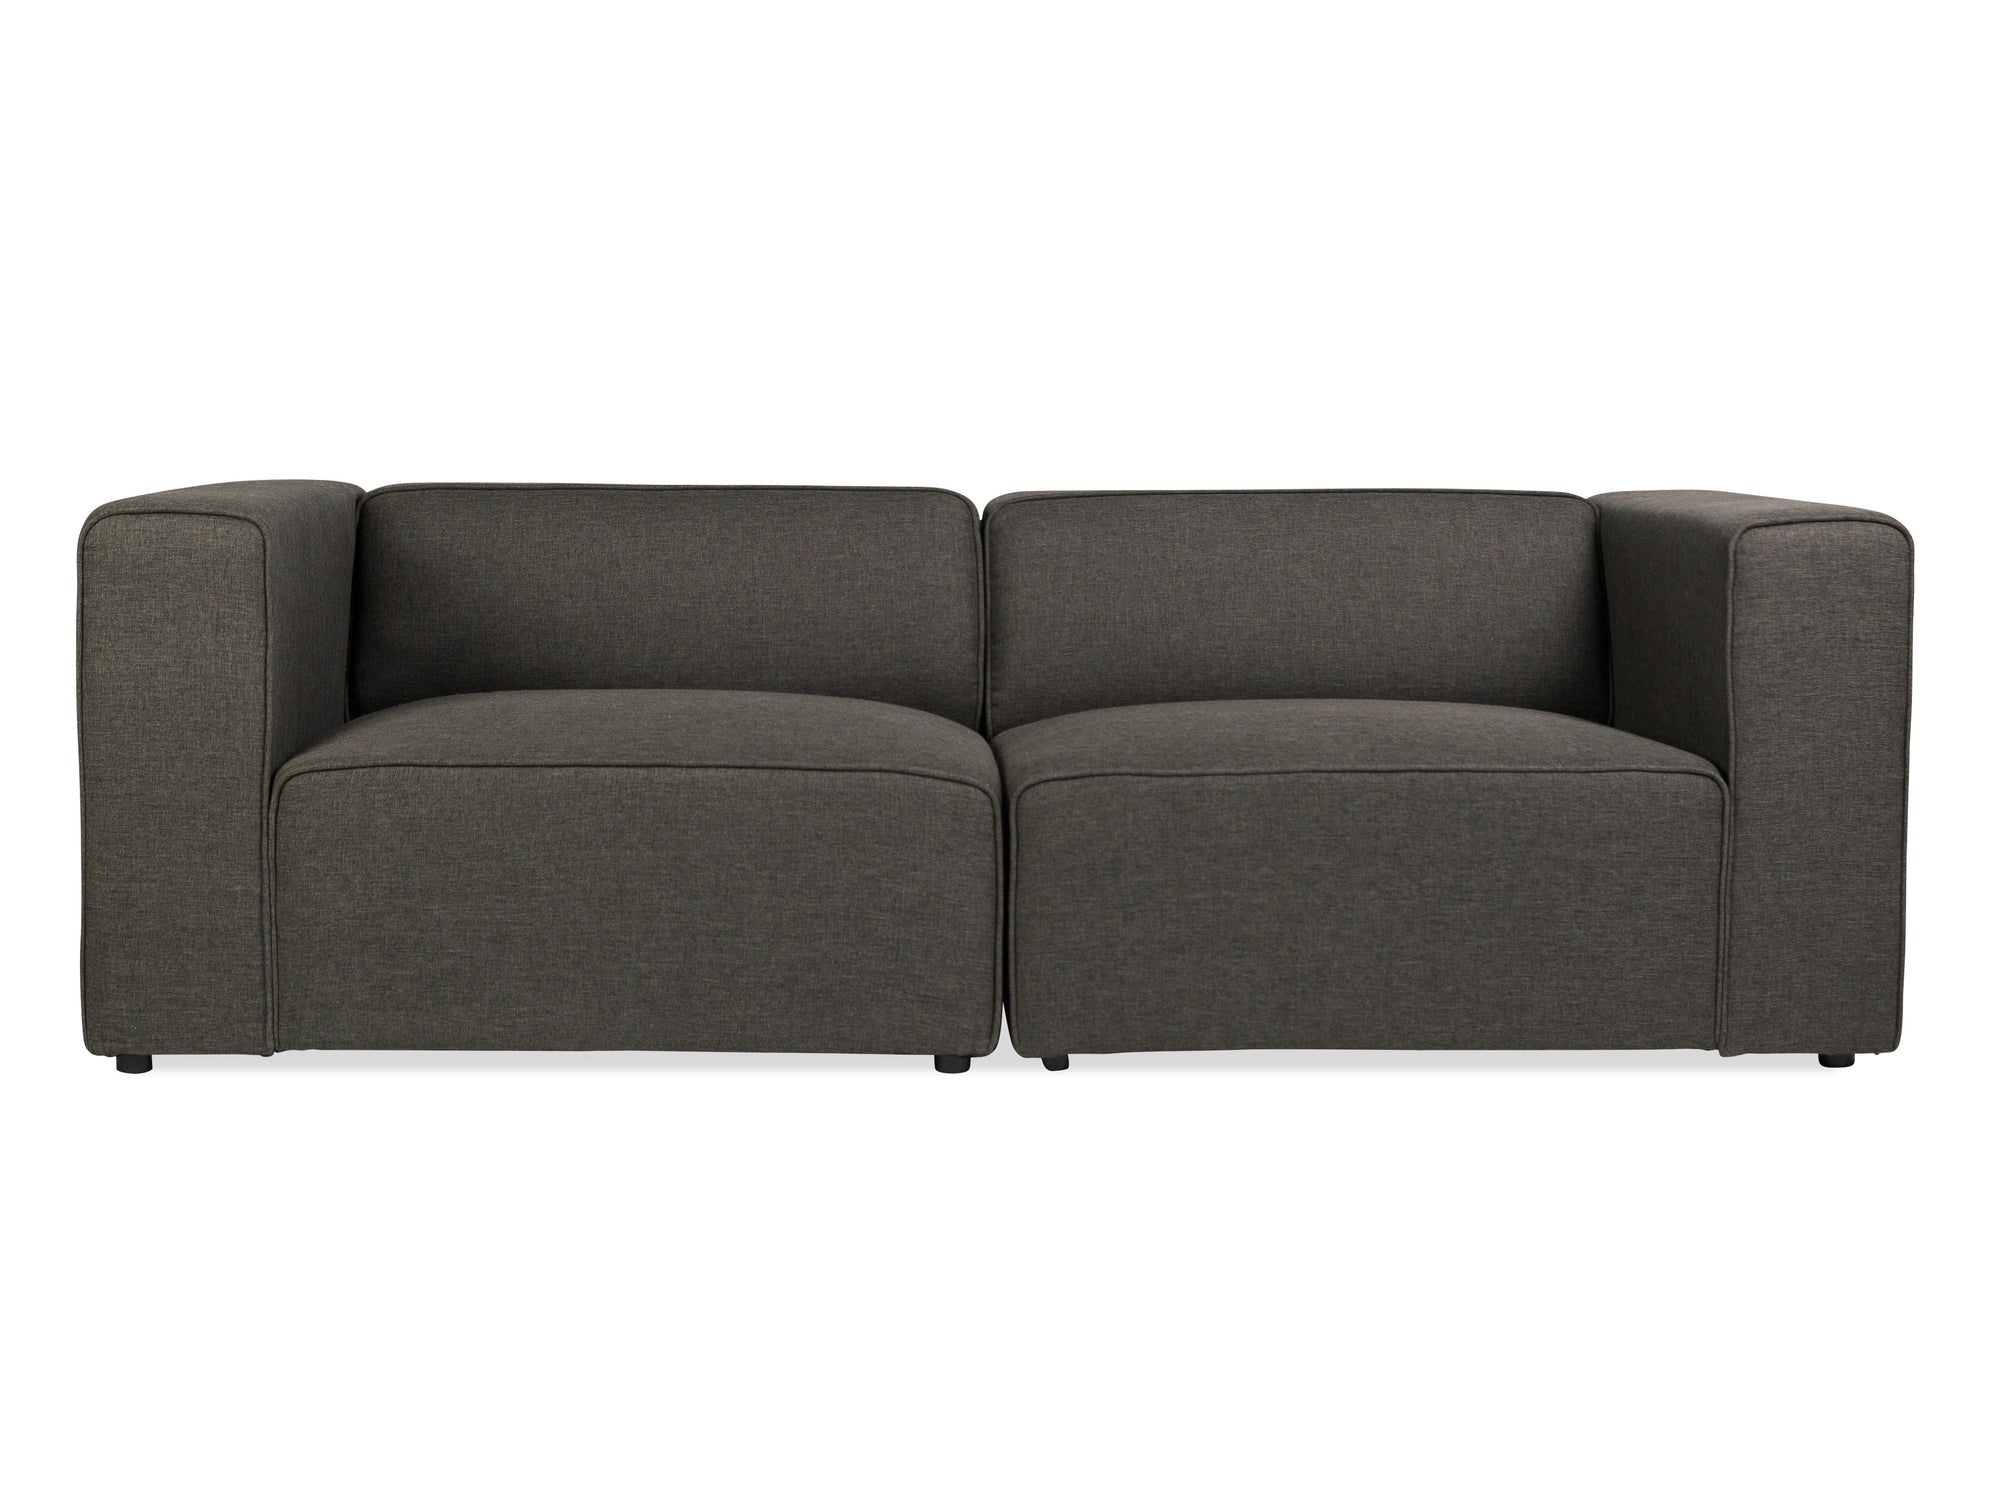 Deep Modular Sofa - The Everset